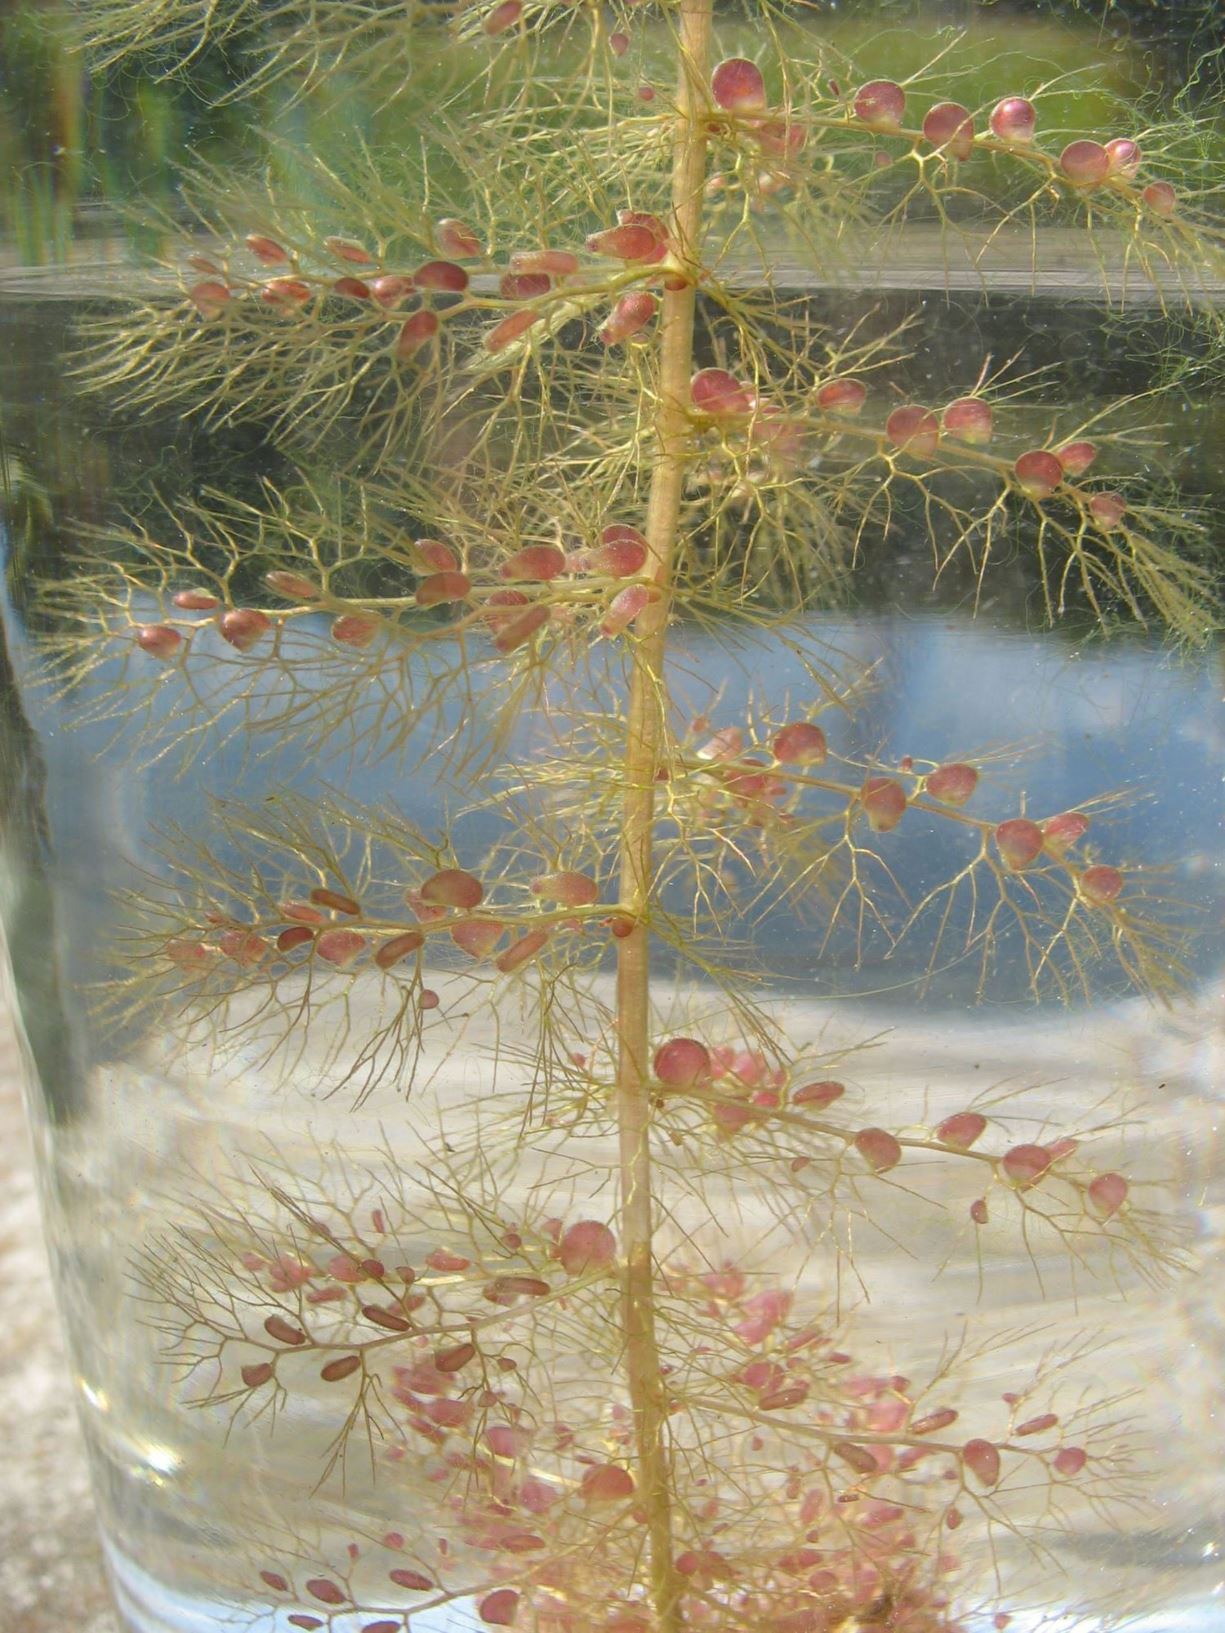 Utricularia vulgaris - Gewöhnlicher Wasserschlauch, greater bladderwort